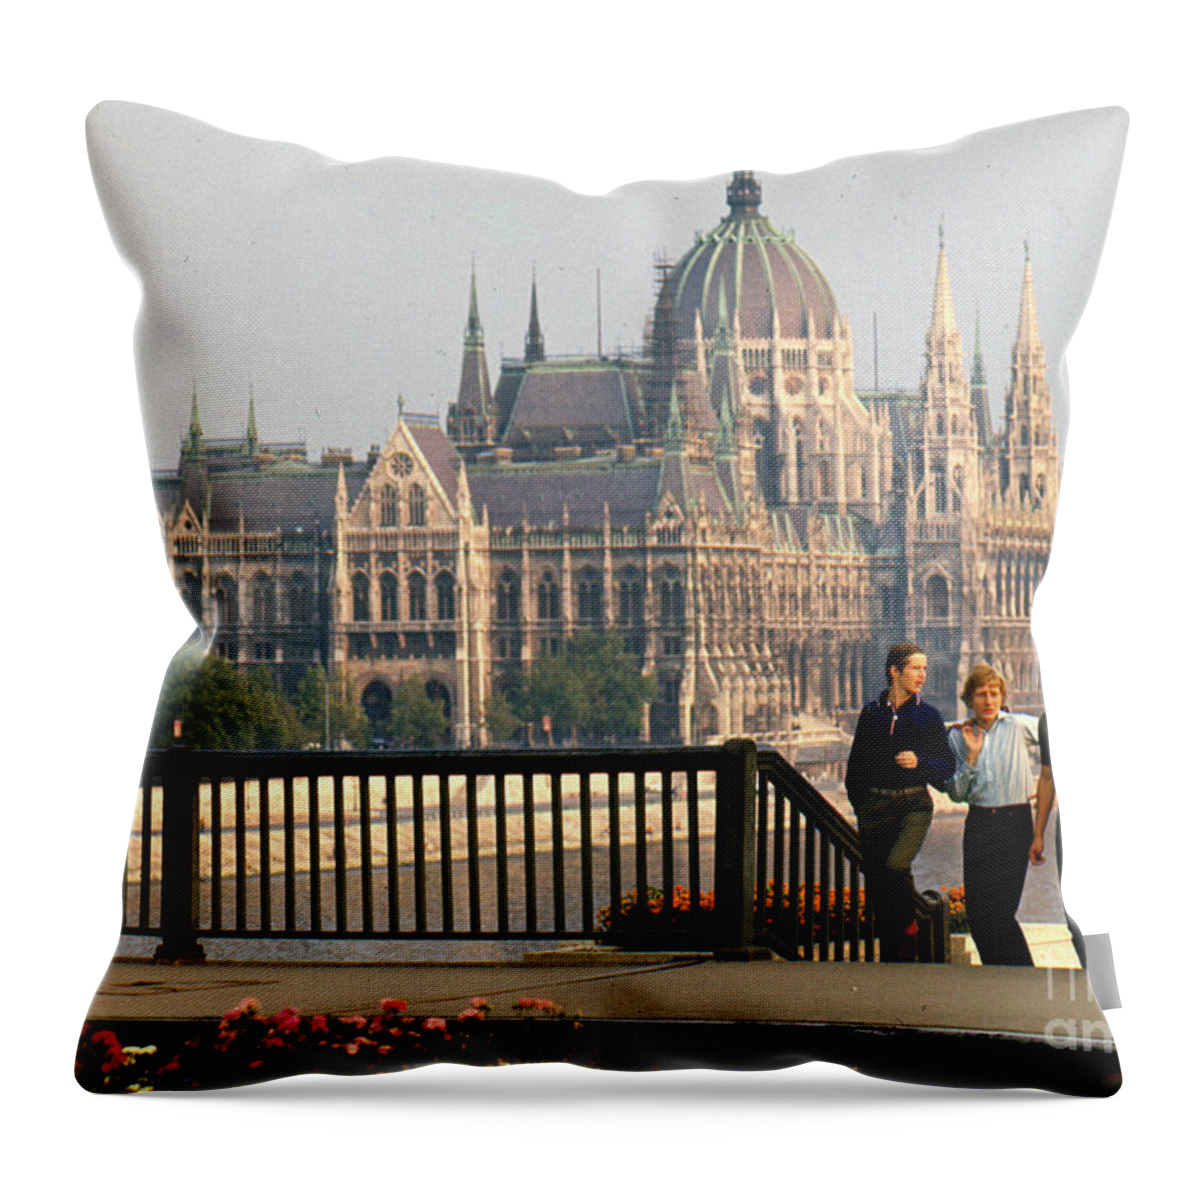 Erik Throw Pillow featuring the photograph Budapest Parliamenet by Erik Falkensteen